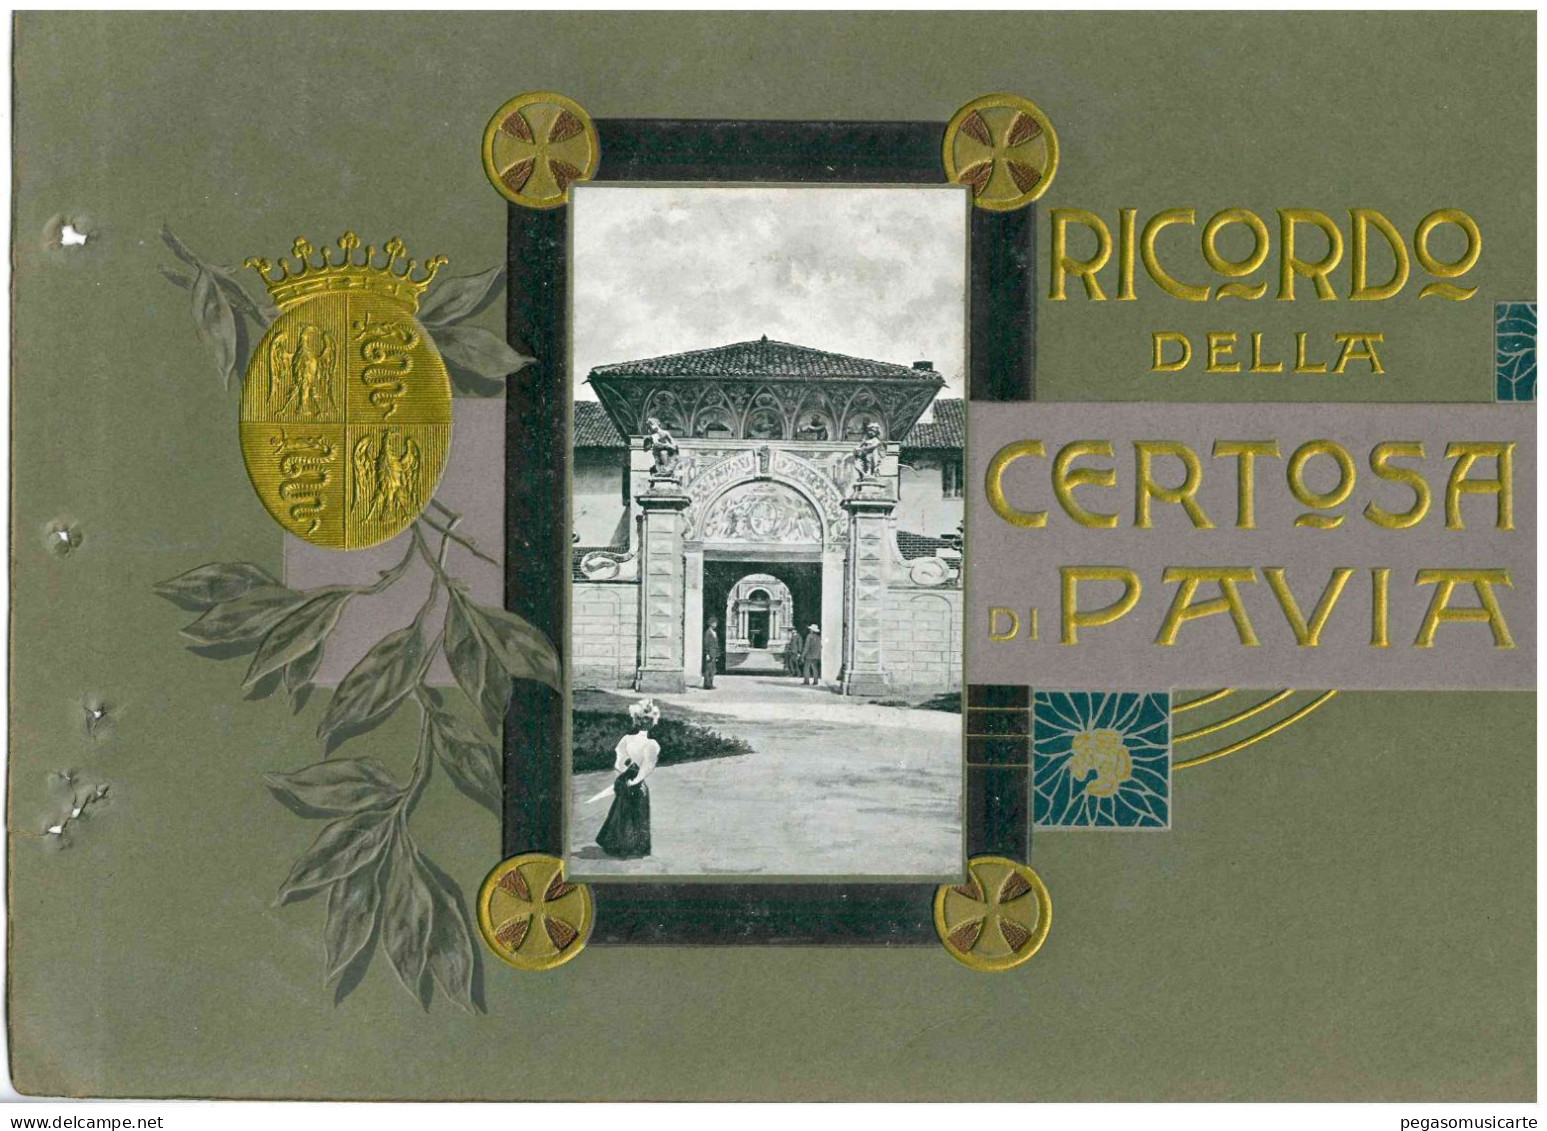 COPERTINA ALBUM FOTOGRAFICO CARTOLINA RICORDO DELLA CERTOSA DI PAVIA SOLO COPERTINA - CM 20X30 - Libri & Cataloghi